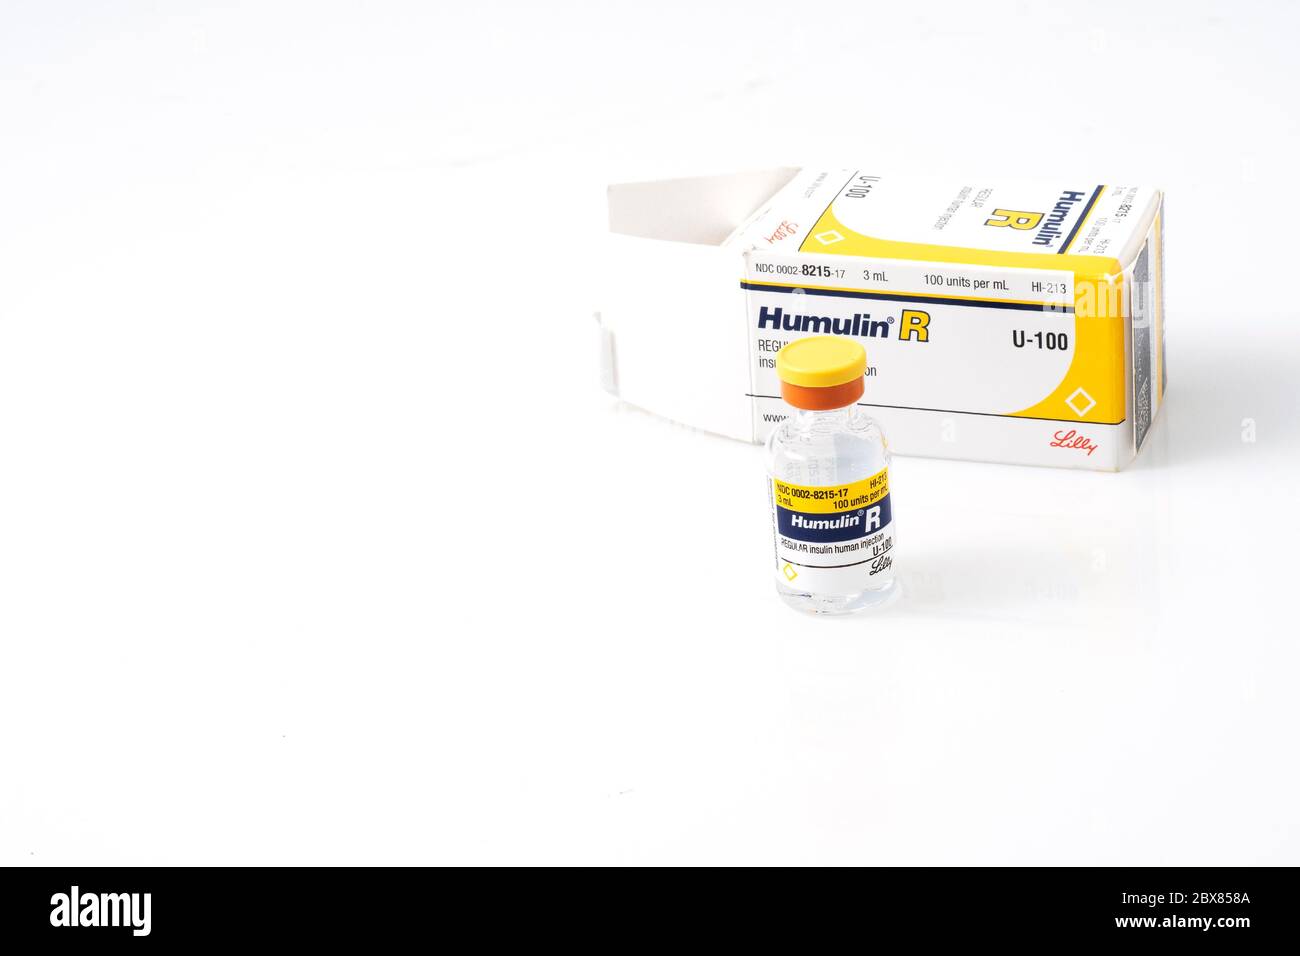 Portland, O maggio 17 2020. Un flaconcino di Humulin R Insulin, un farmaco essenziale per il diabete, su sfondo bianco. Foto Stock